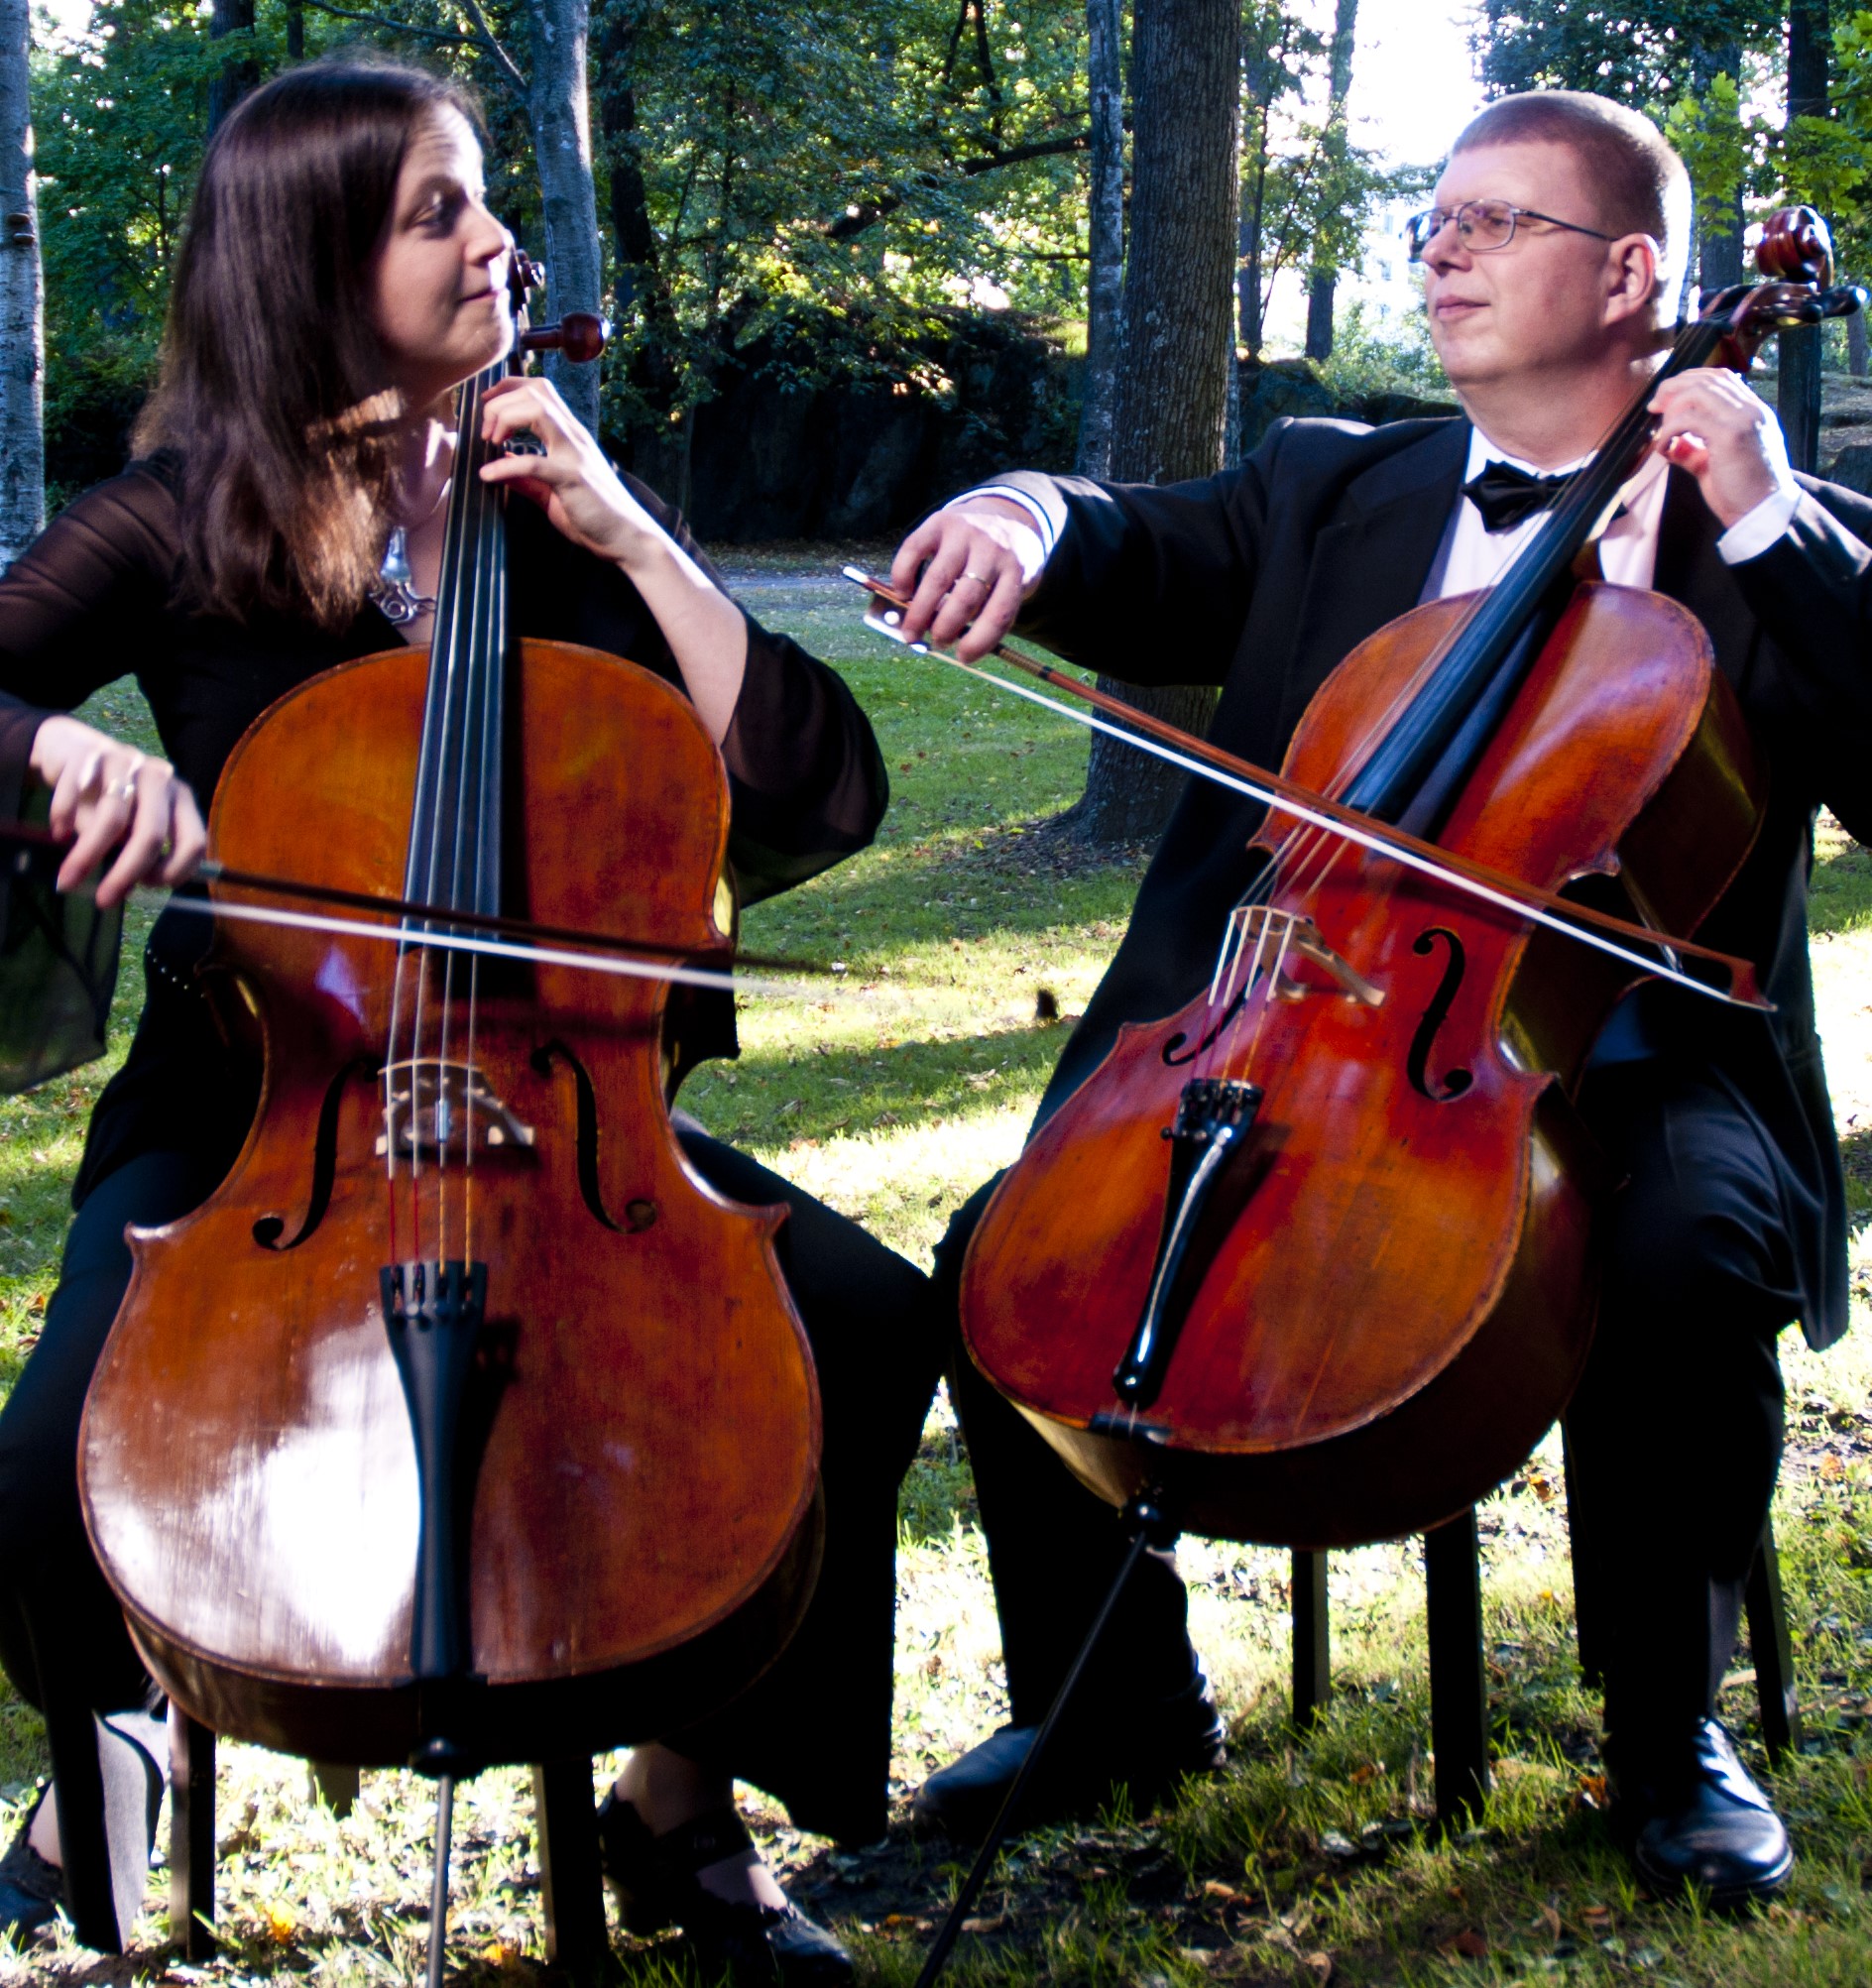 Kuvassa Anna-Maaria ja Olli Varonen istuvat ja soittavat sellojaan. He katsovat toisiaan kohti.